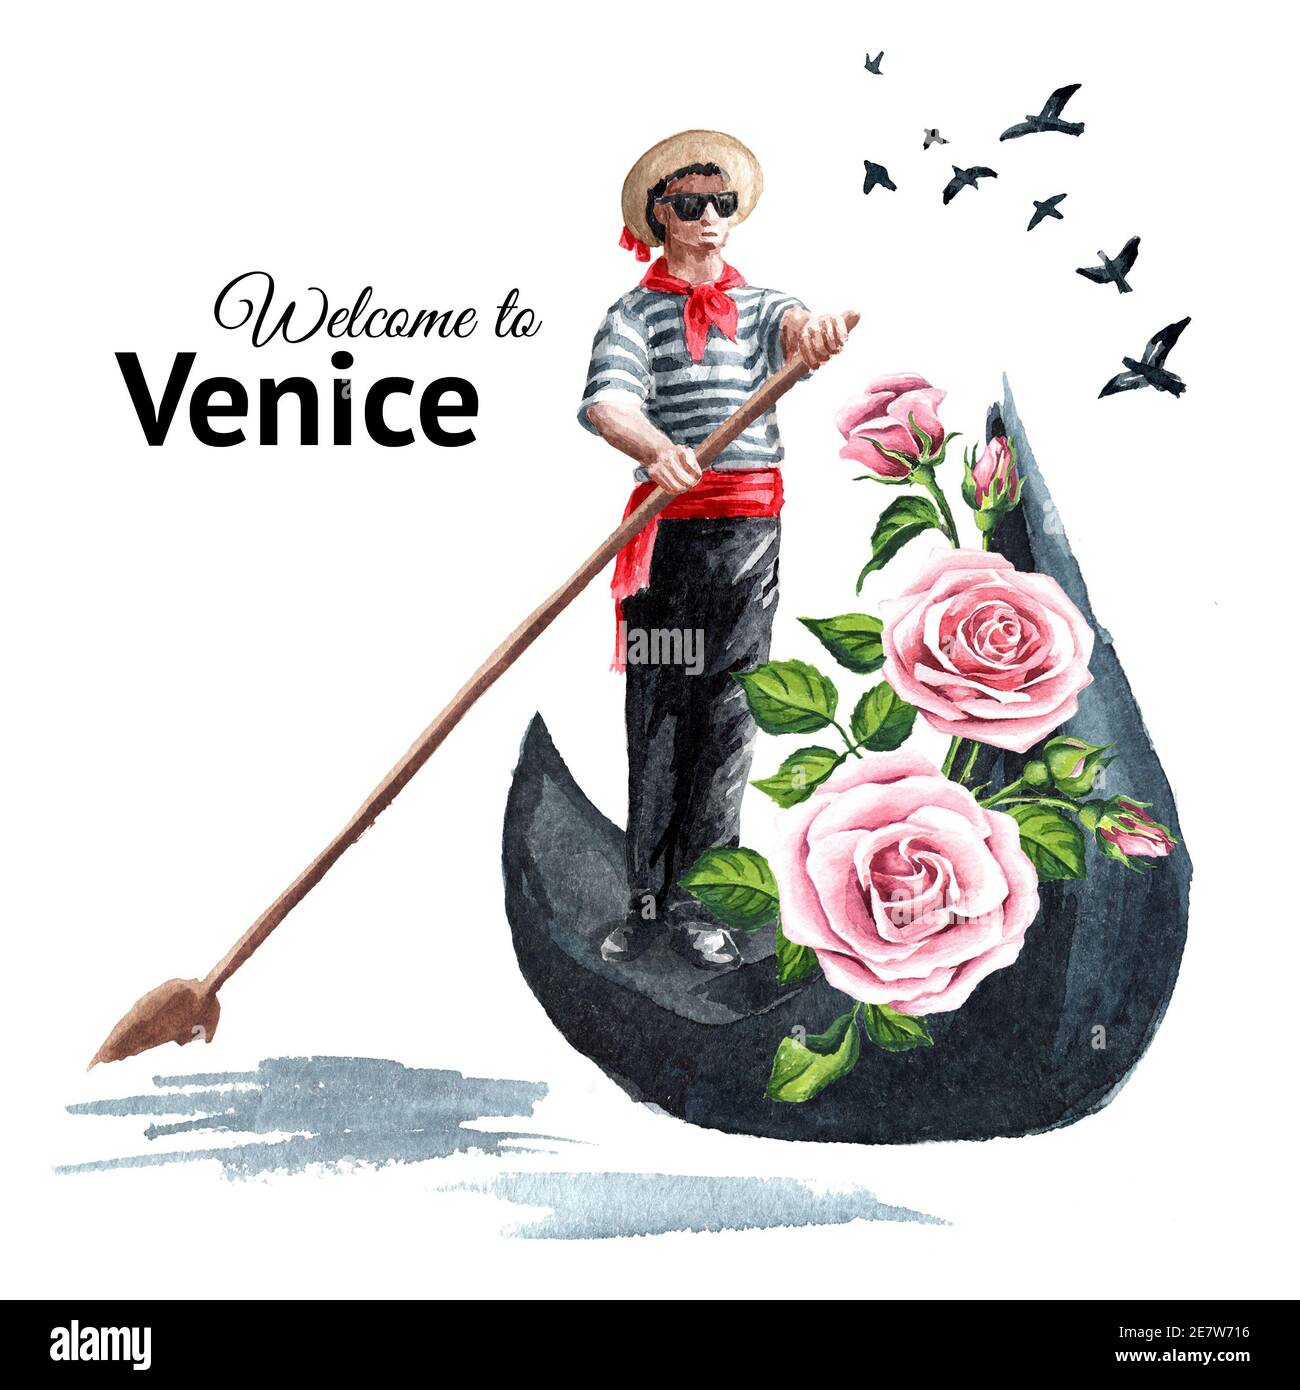 Carte de bienvenue à Venise. Gondolier vénitien en vêtements traditionnels, en gondole avec fleurs. Illustration aquarelle dessinée à la main isolée sur fond blanc Banque D'Images